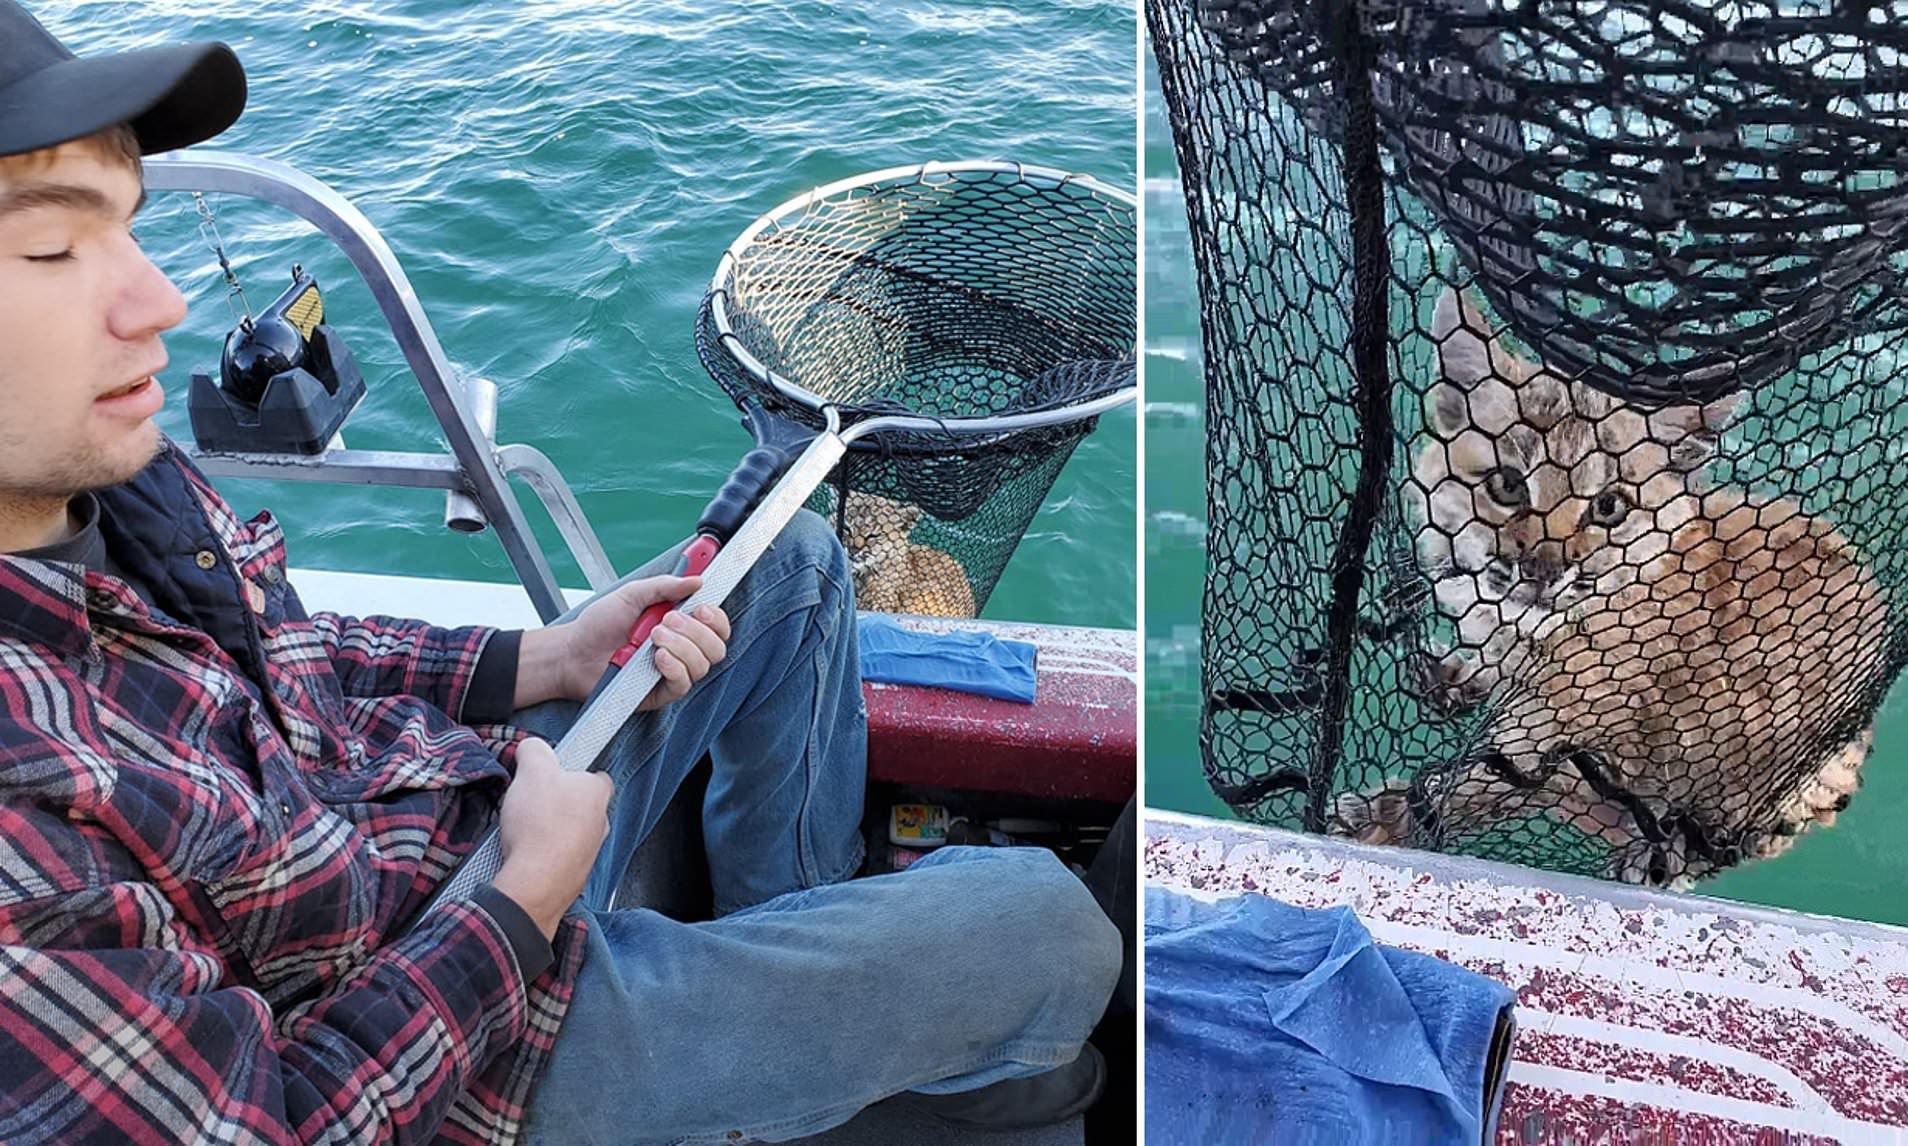  VIDEO  Doi americani au pescuit un pui de linx în mijlocul unui lac